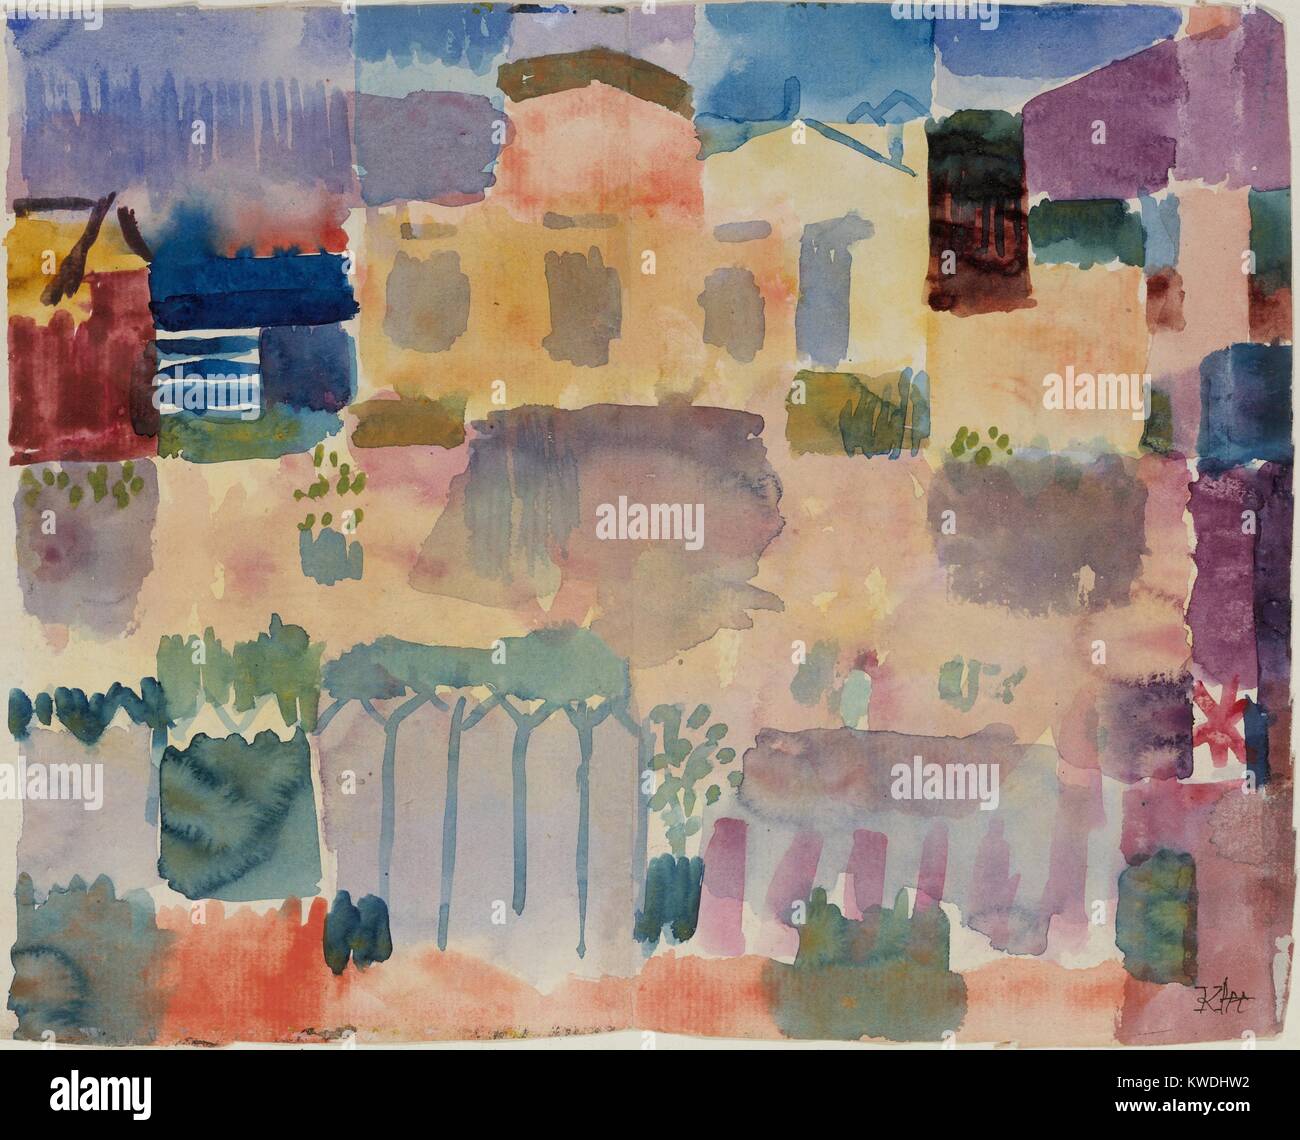 Jardin À ST. GERMAIN, quartier européen, PRÈS DE TUNIS, par Paul Klee, 1914, de l'aquarelle. Ce travail a été peint après Klees visite en Tunisie (BSLOC 2017 7 42) Banque D'Images